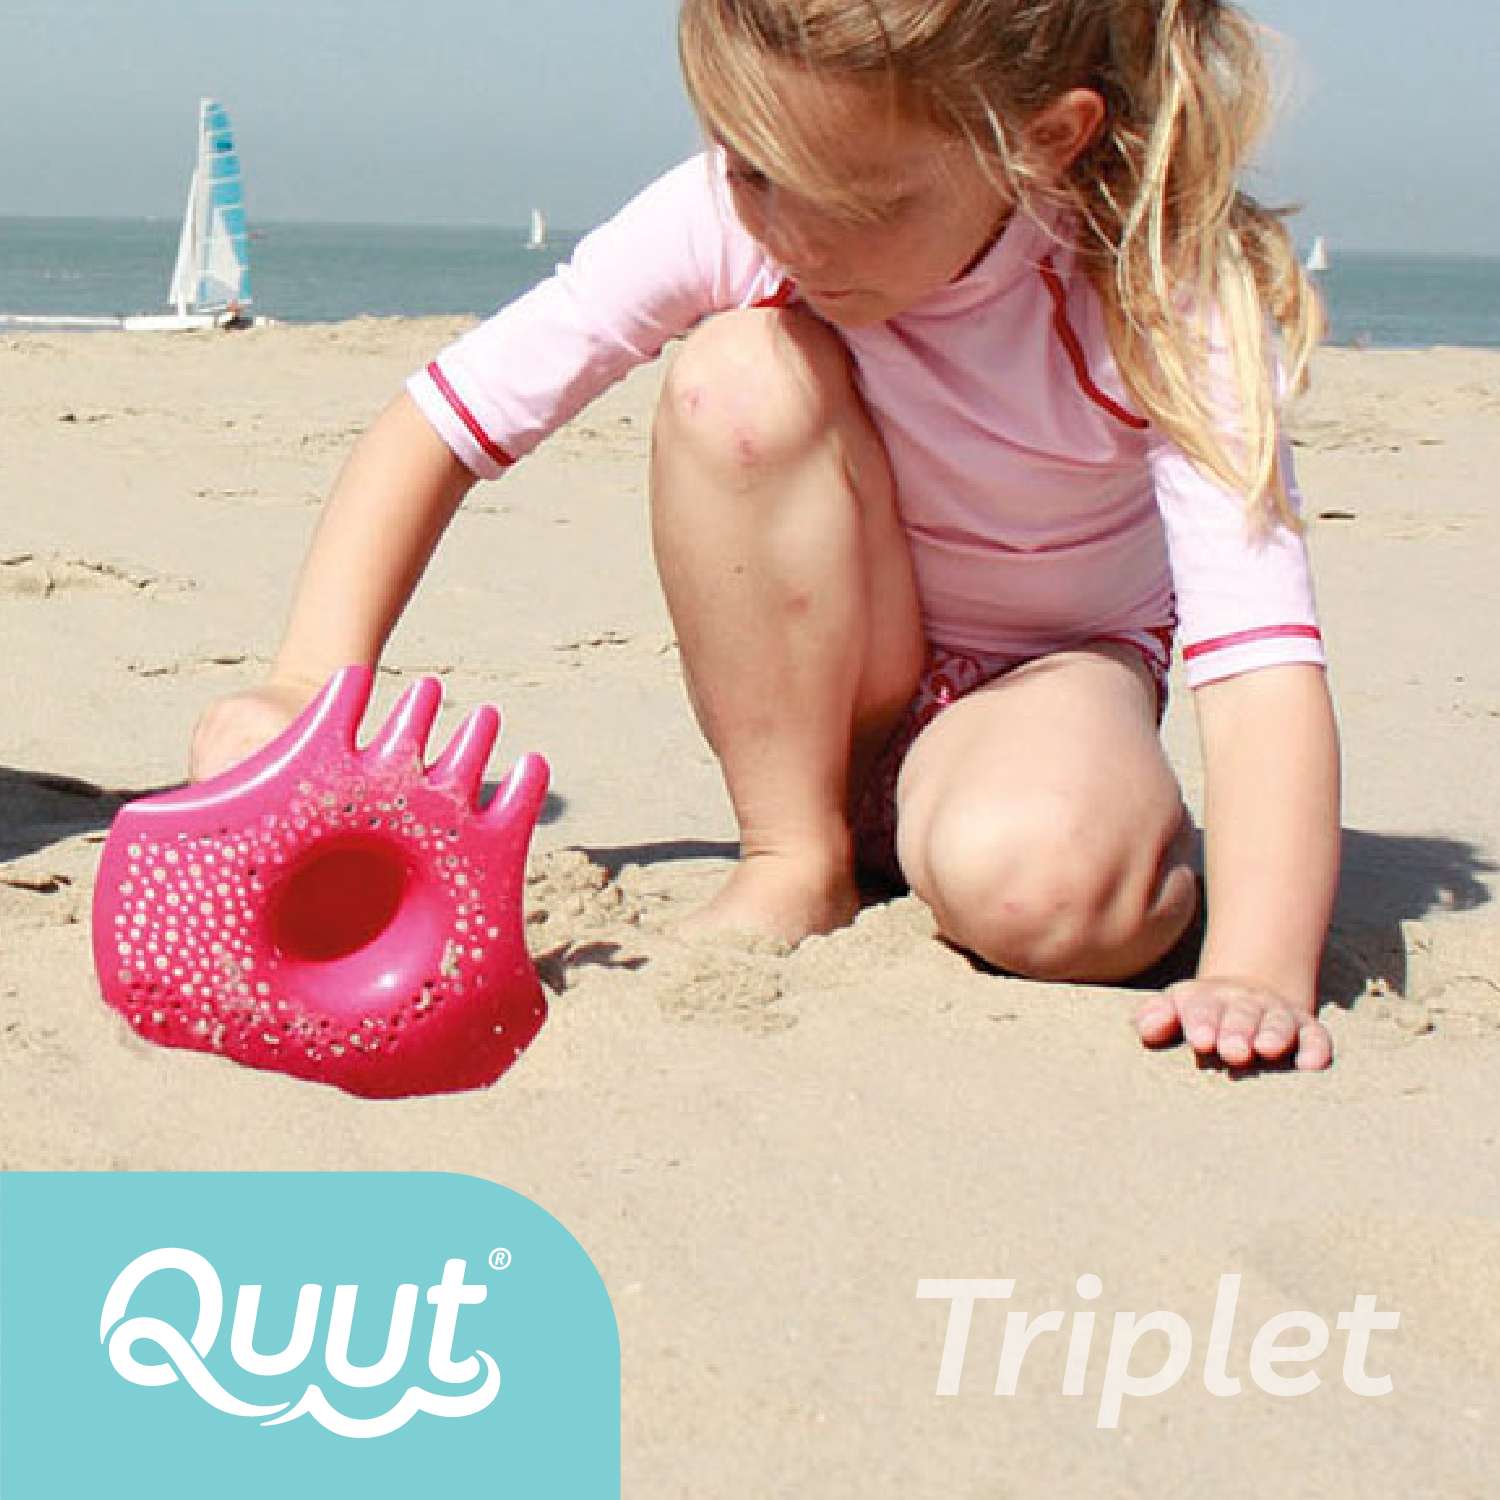 Игрушка для песка и снега QUUT многофункциональная Triplet Винтажный синий - фото 5